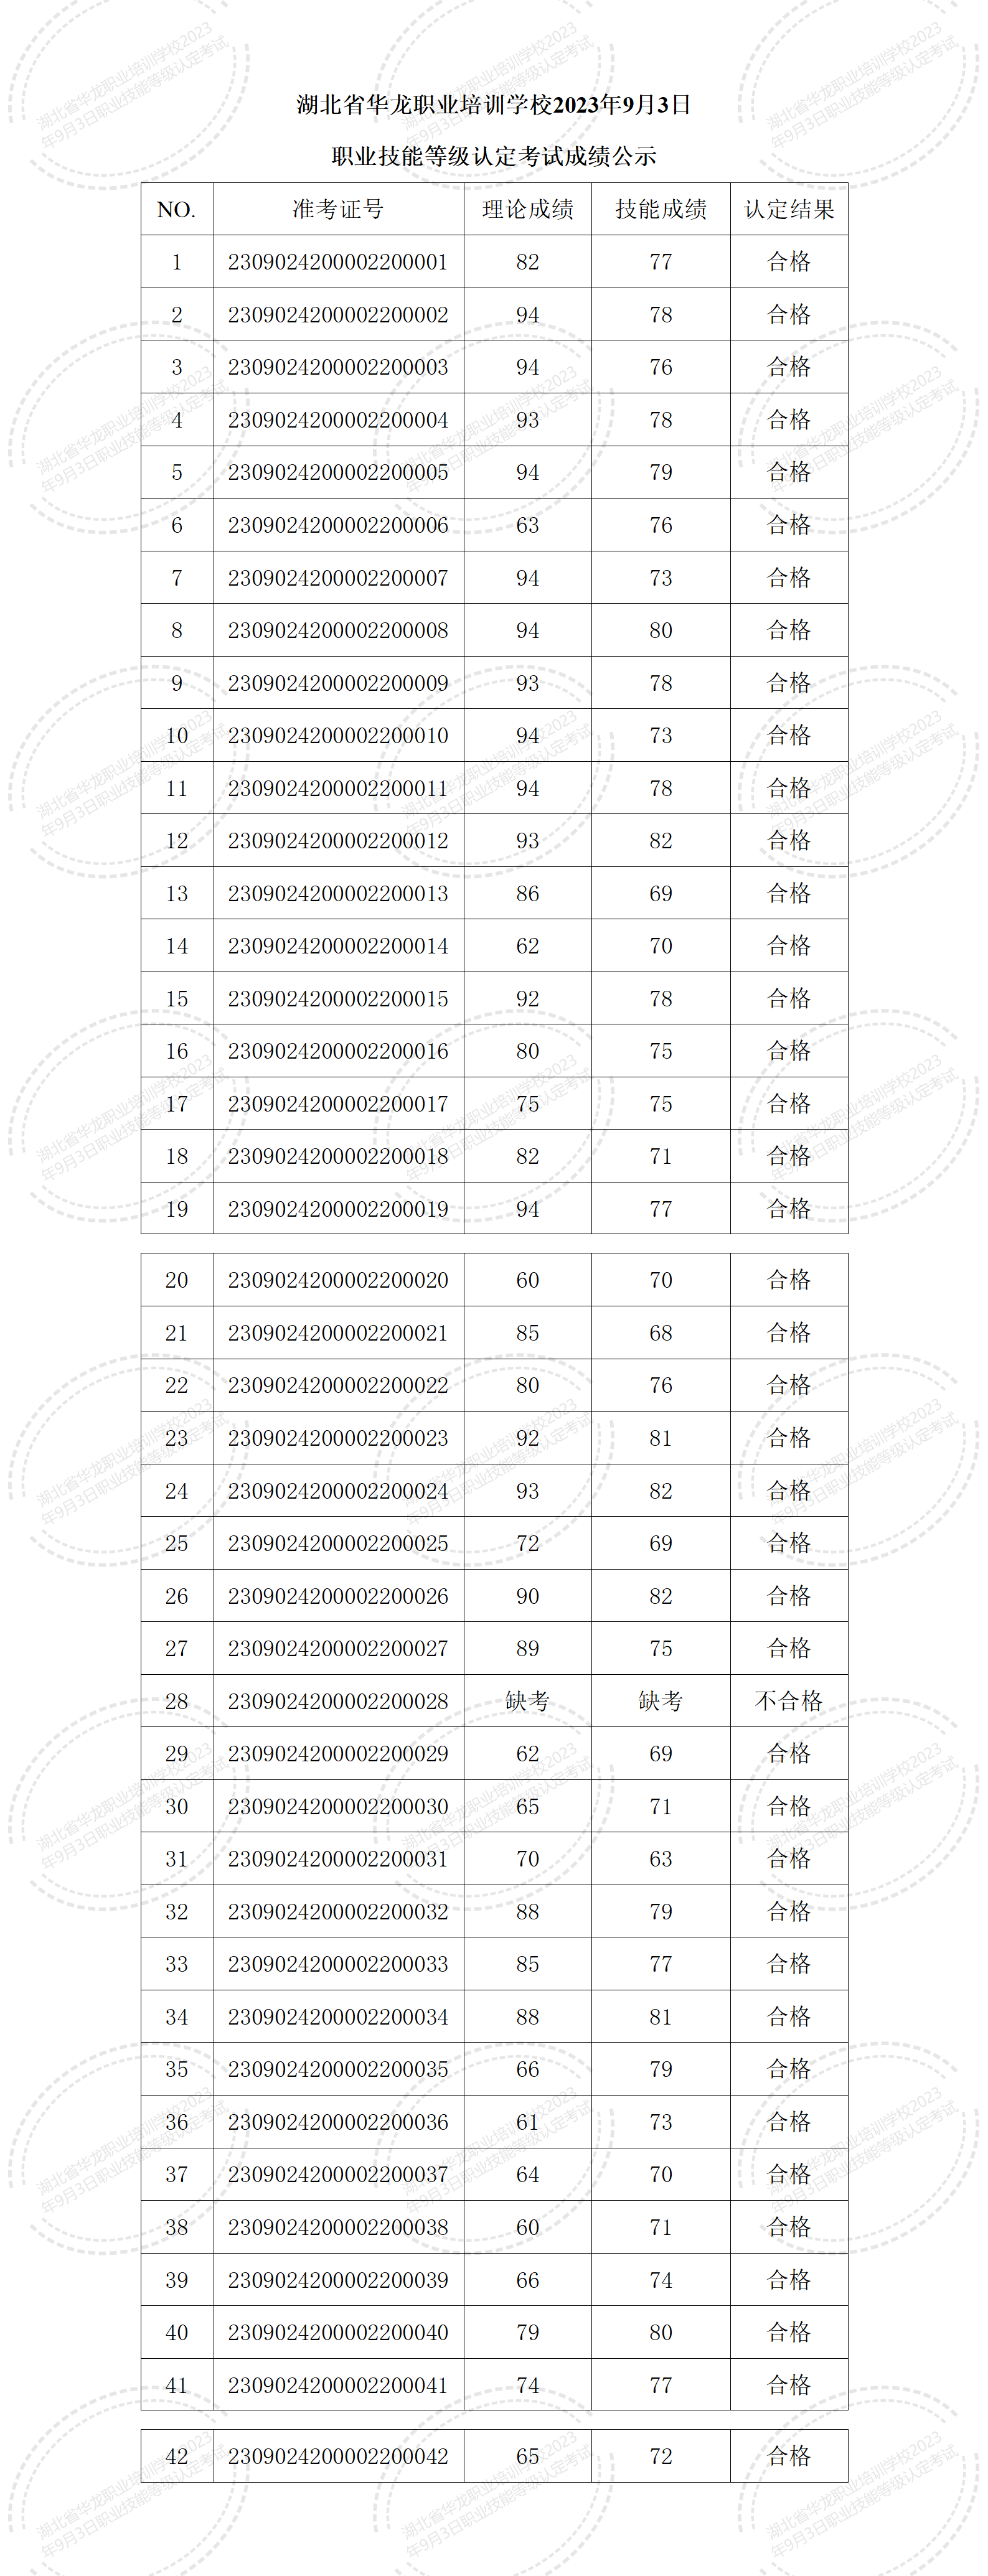 湖北省华龙职业培训学校2023年9月3日职业技能等级认定考试成绩公示_01